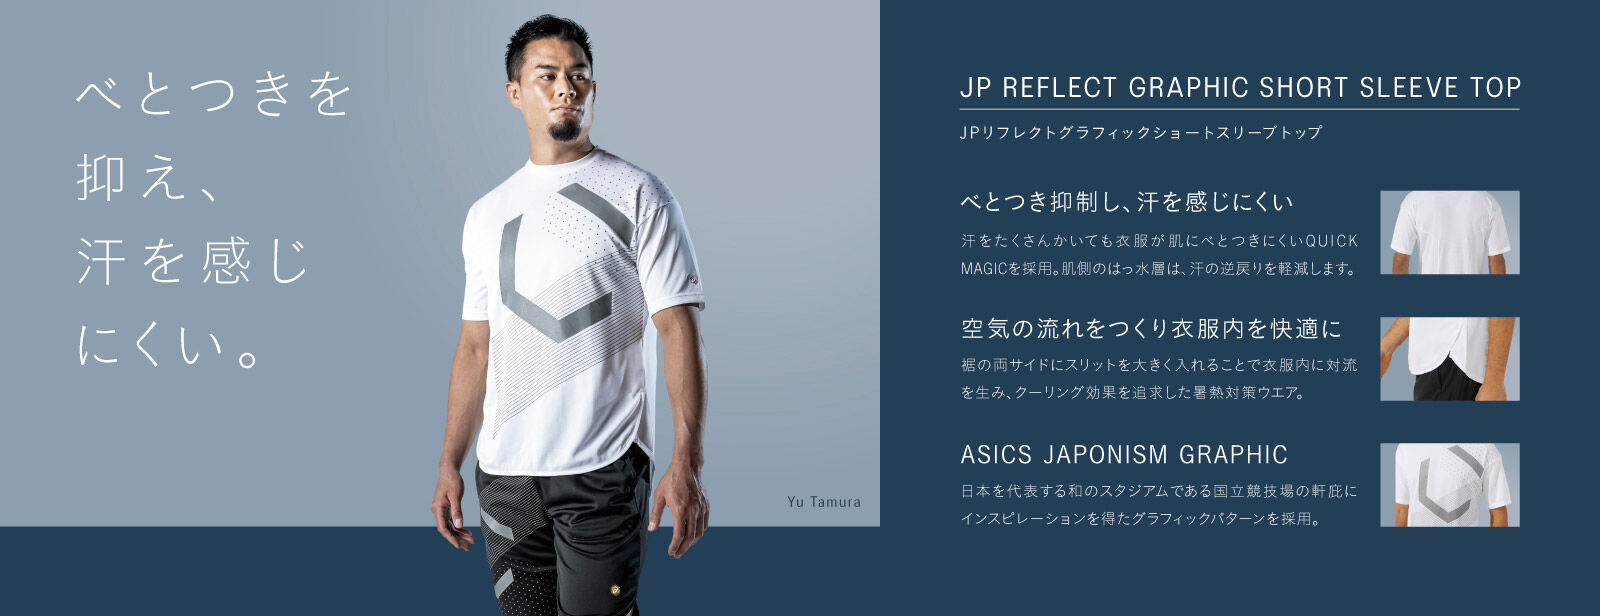 JPリフレクトグラフィックショートスリーブトップ | パフォーマンスブラック | メンズ Tシャツ・ポロシャツ【ASICS公式通販】